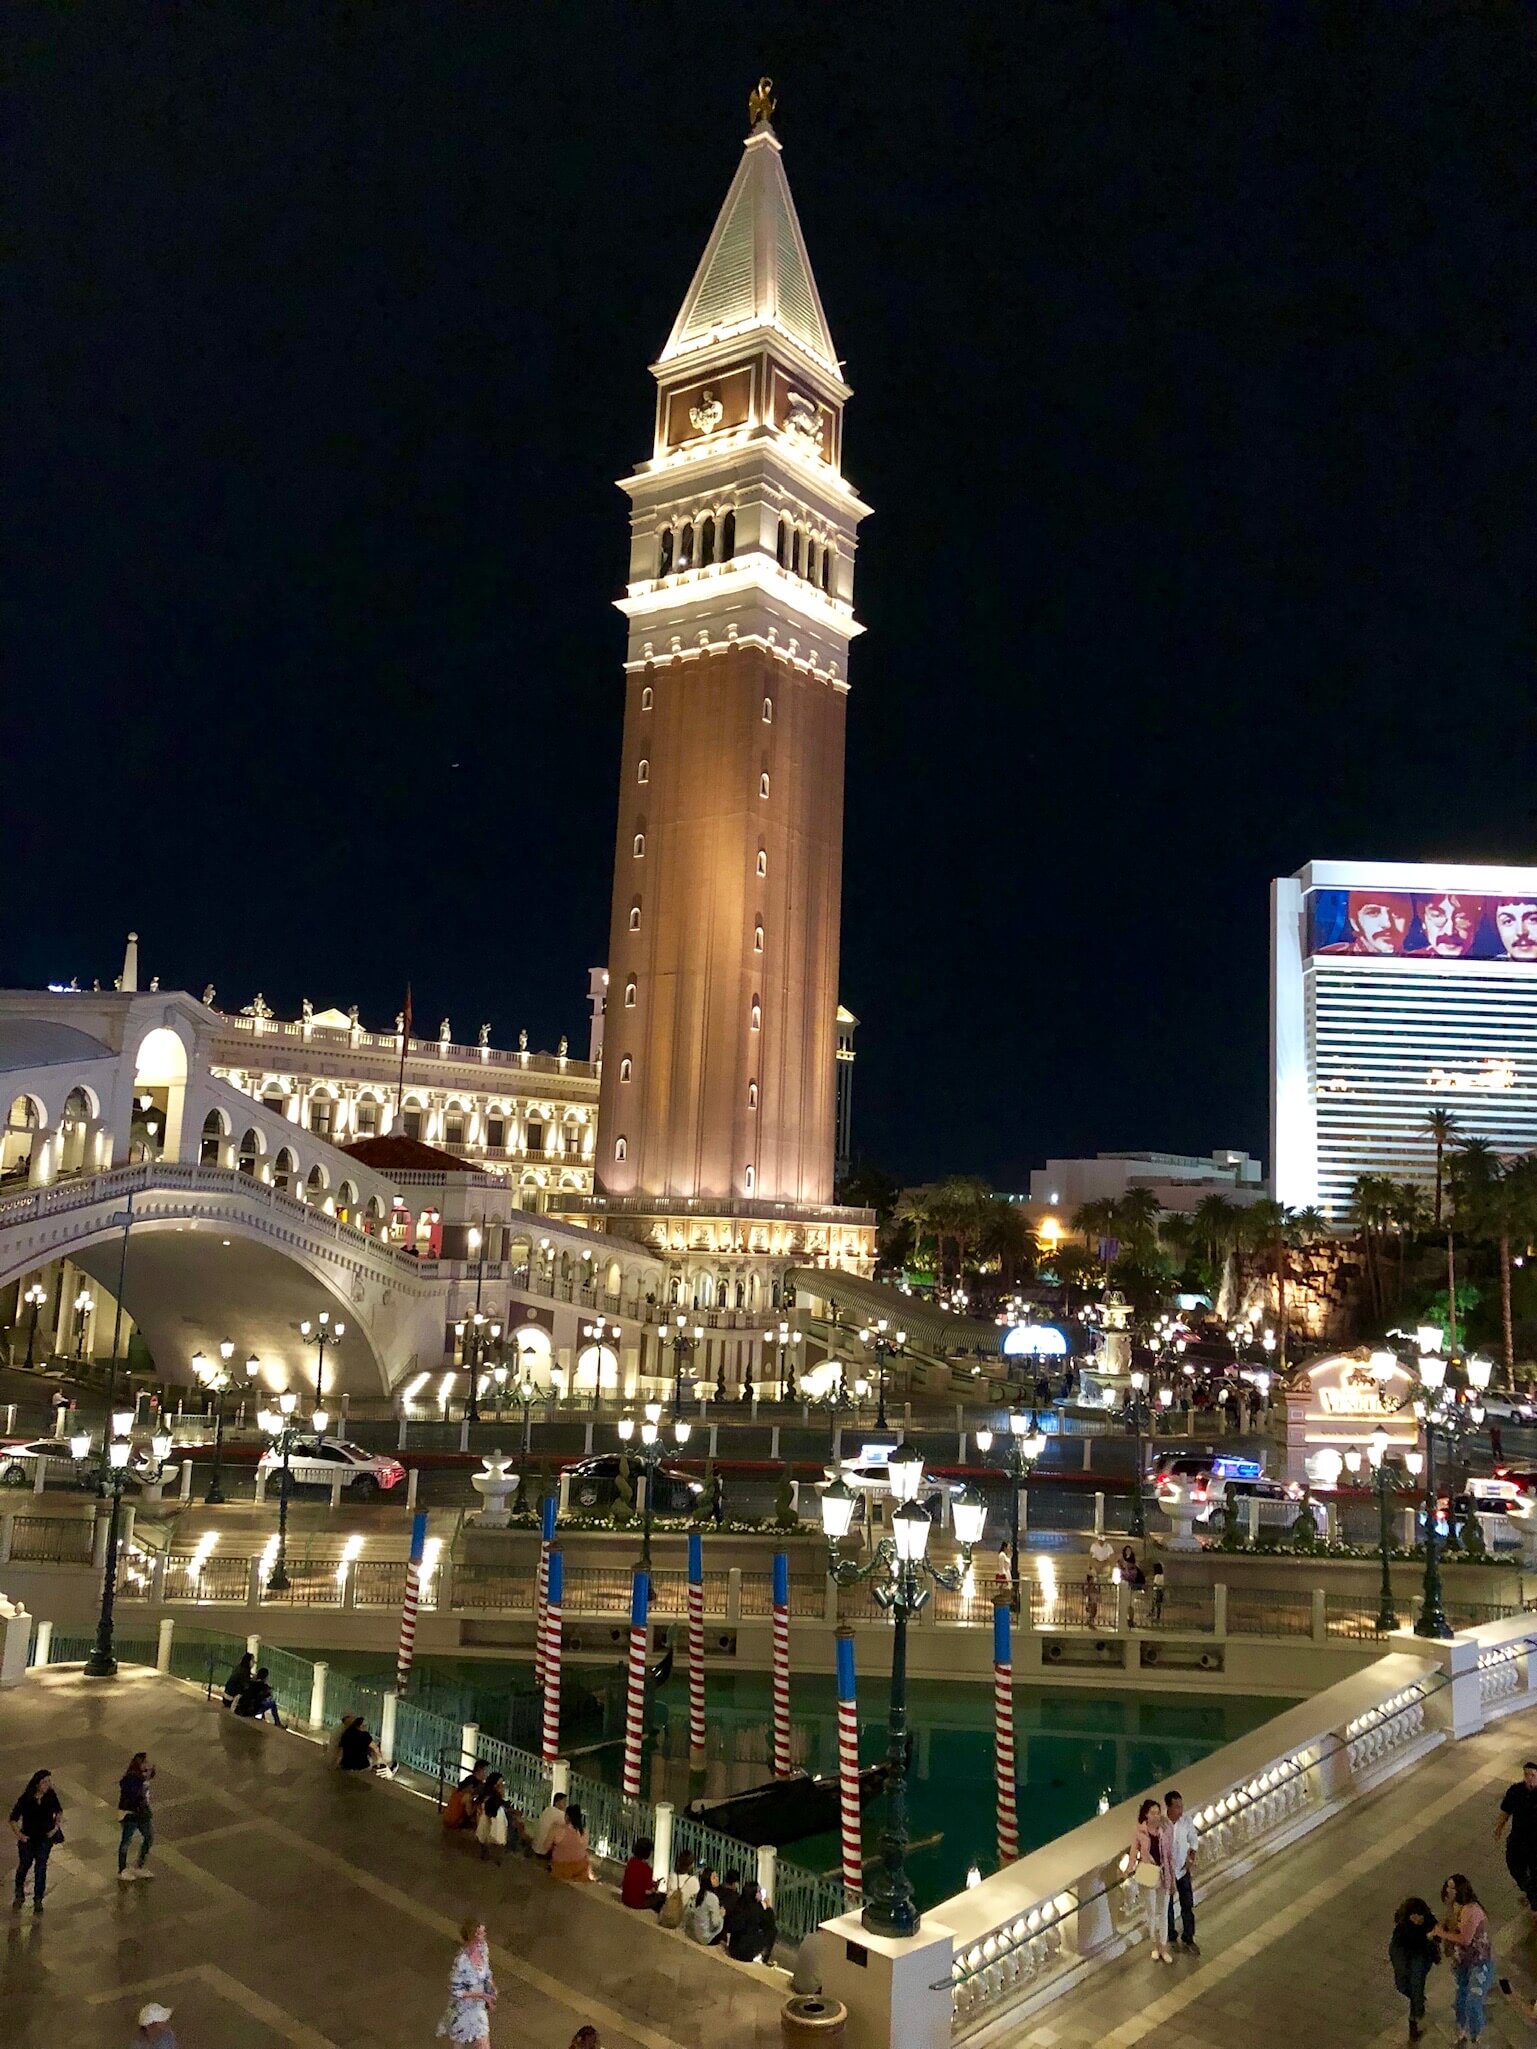 Outside Venetian Las Vegas